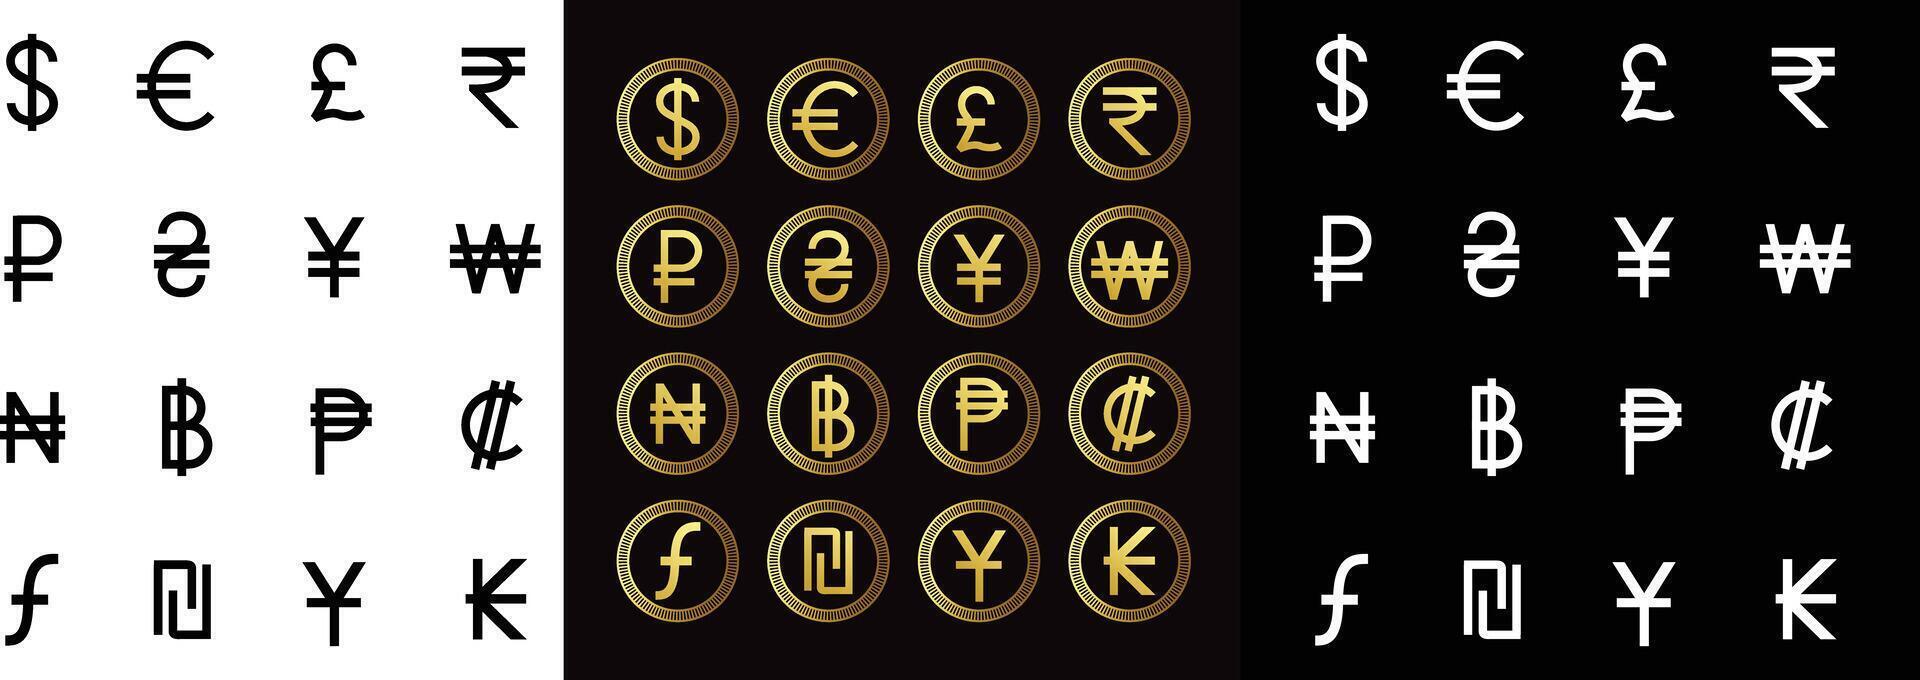 vektor valuta tecken av annorlunda länder. uppsättning av svart, gyllene Färg och vit valuta symboler.